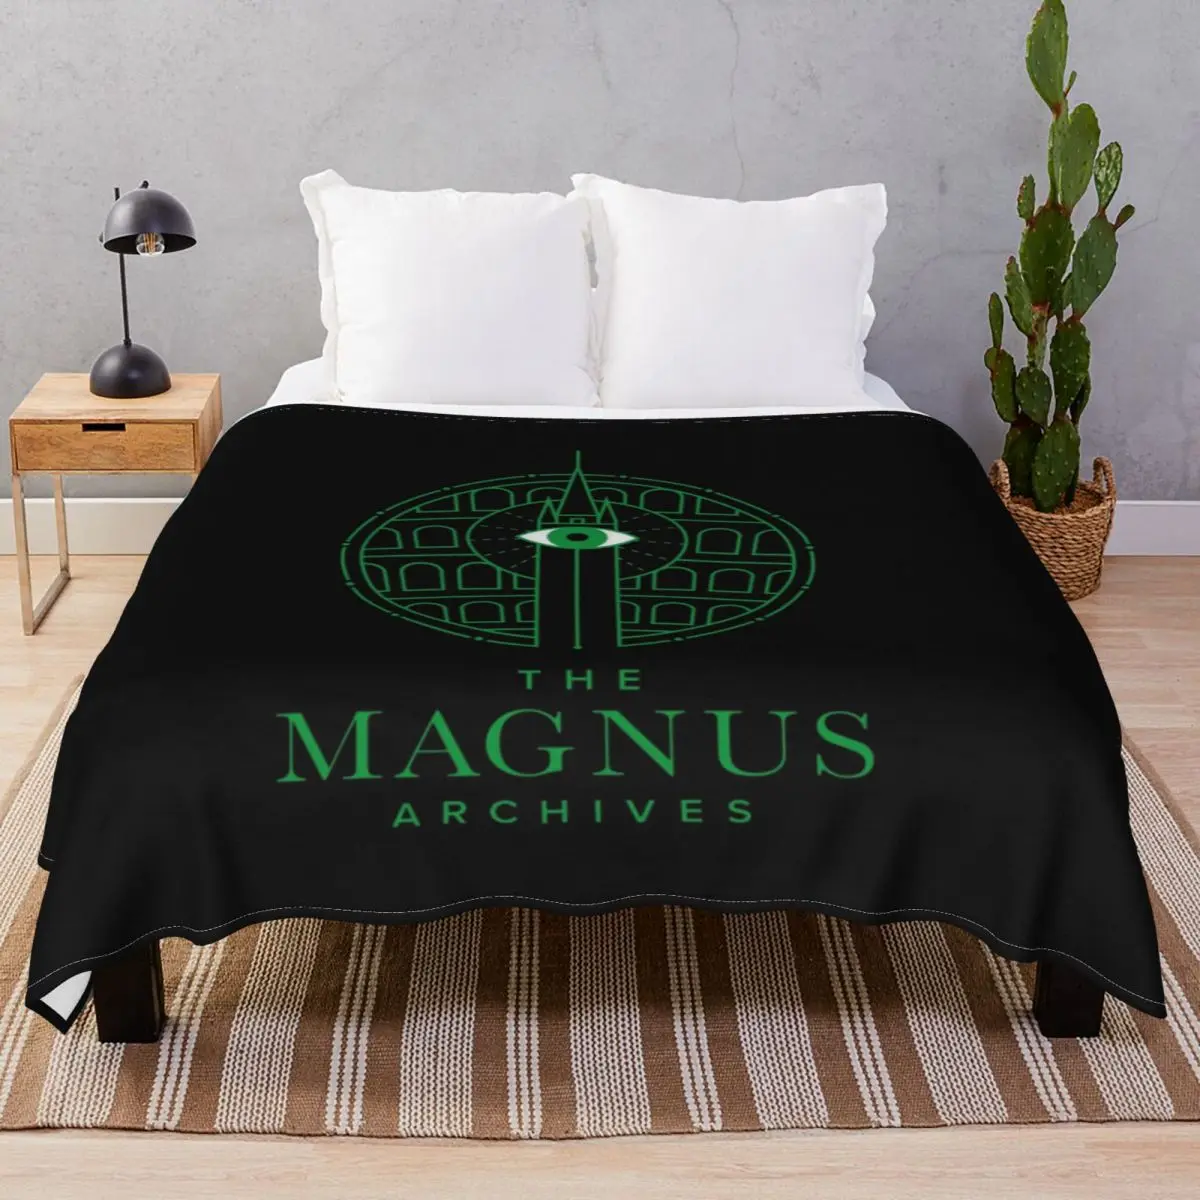 

Архивное одеяло Magnus, Фланелевое осеннее многофункциональное покрывало унисекс, покрывало для кровати, дома, кушетки, кемпинга, офиса